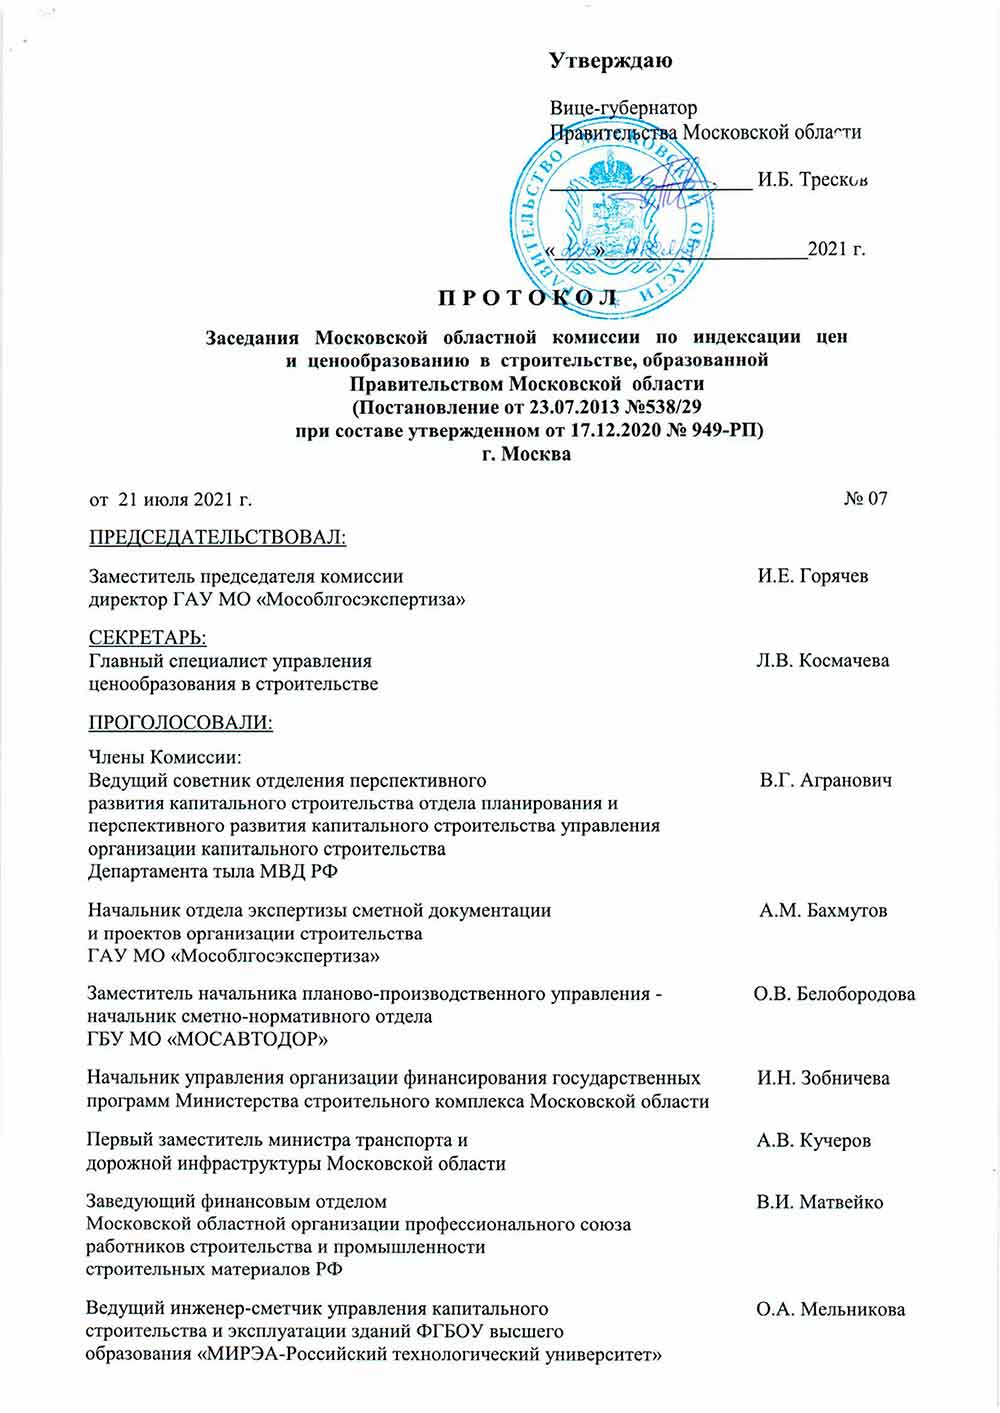 Протокол Мособлгосэкспертизы №07 от 21.07.2021 года